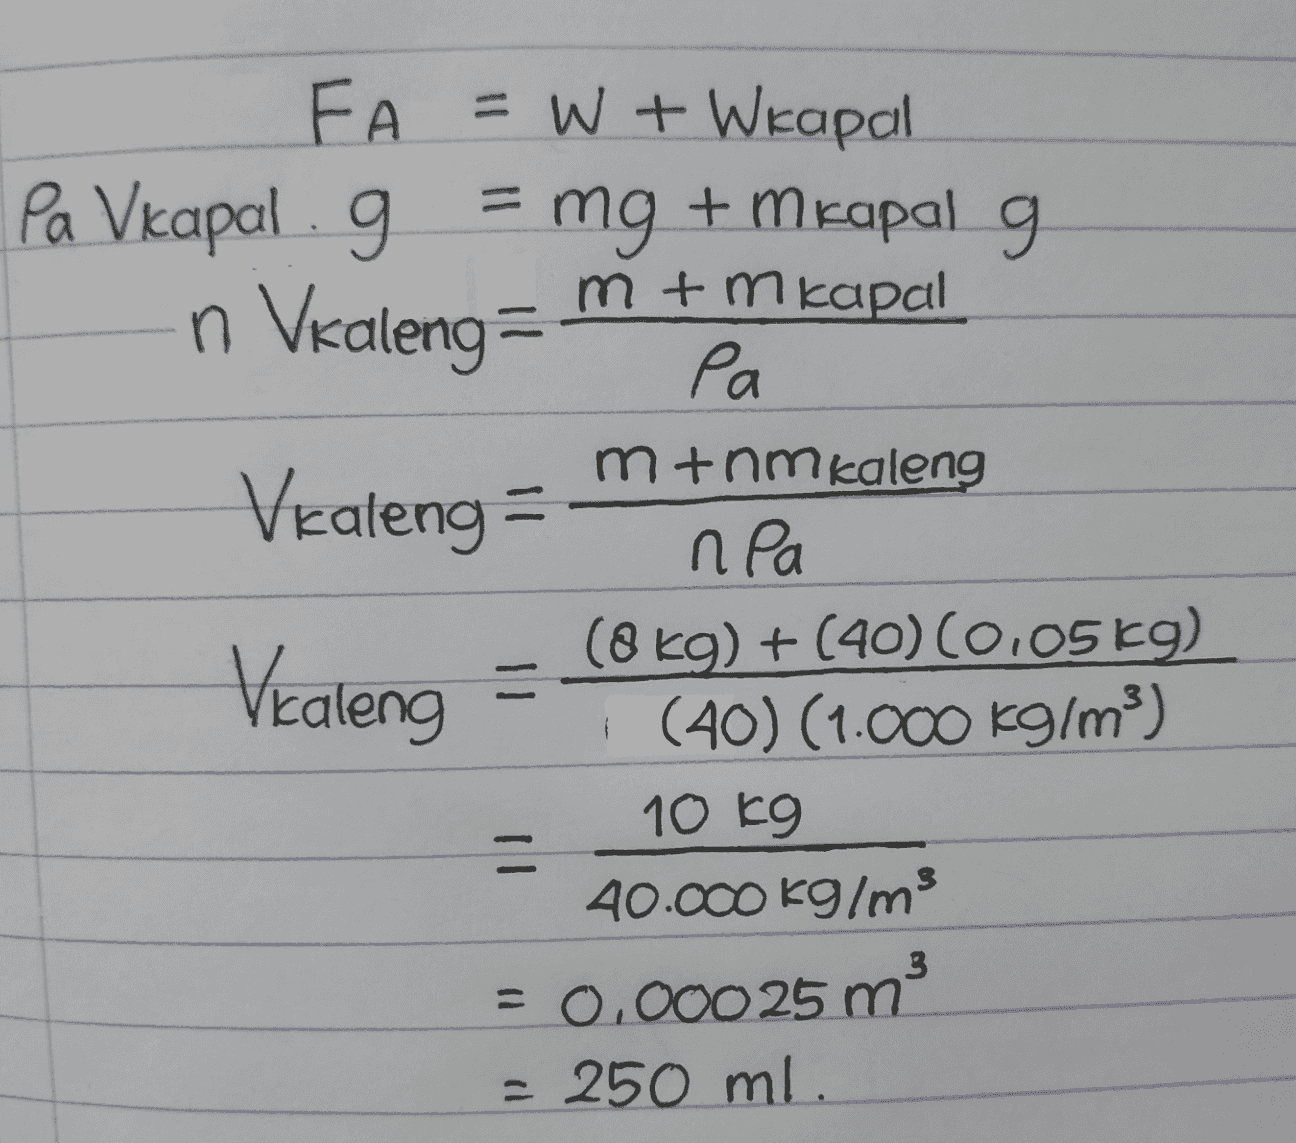 FA =W + Wkapal Pa Vkapal . g = mg + m kapal g m+mkapal n Valeng Ра pa mtnm kaleng Vealeng = npa (8 kg) + (40) (0.05 kg) Vealeng = (40) (1.000 kg/m3) 10 kg = 40.000 kg/ms = 0.00025 m - 250 ml. 3 